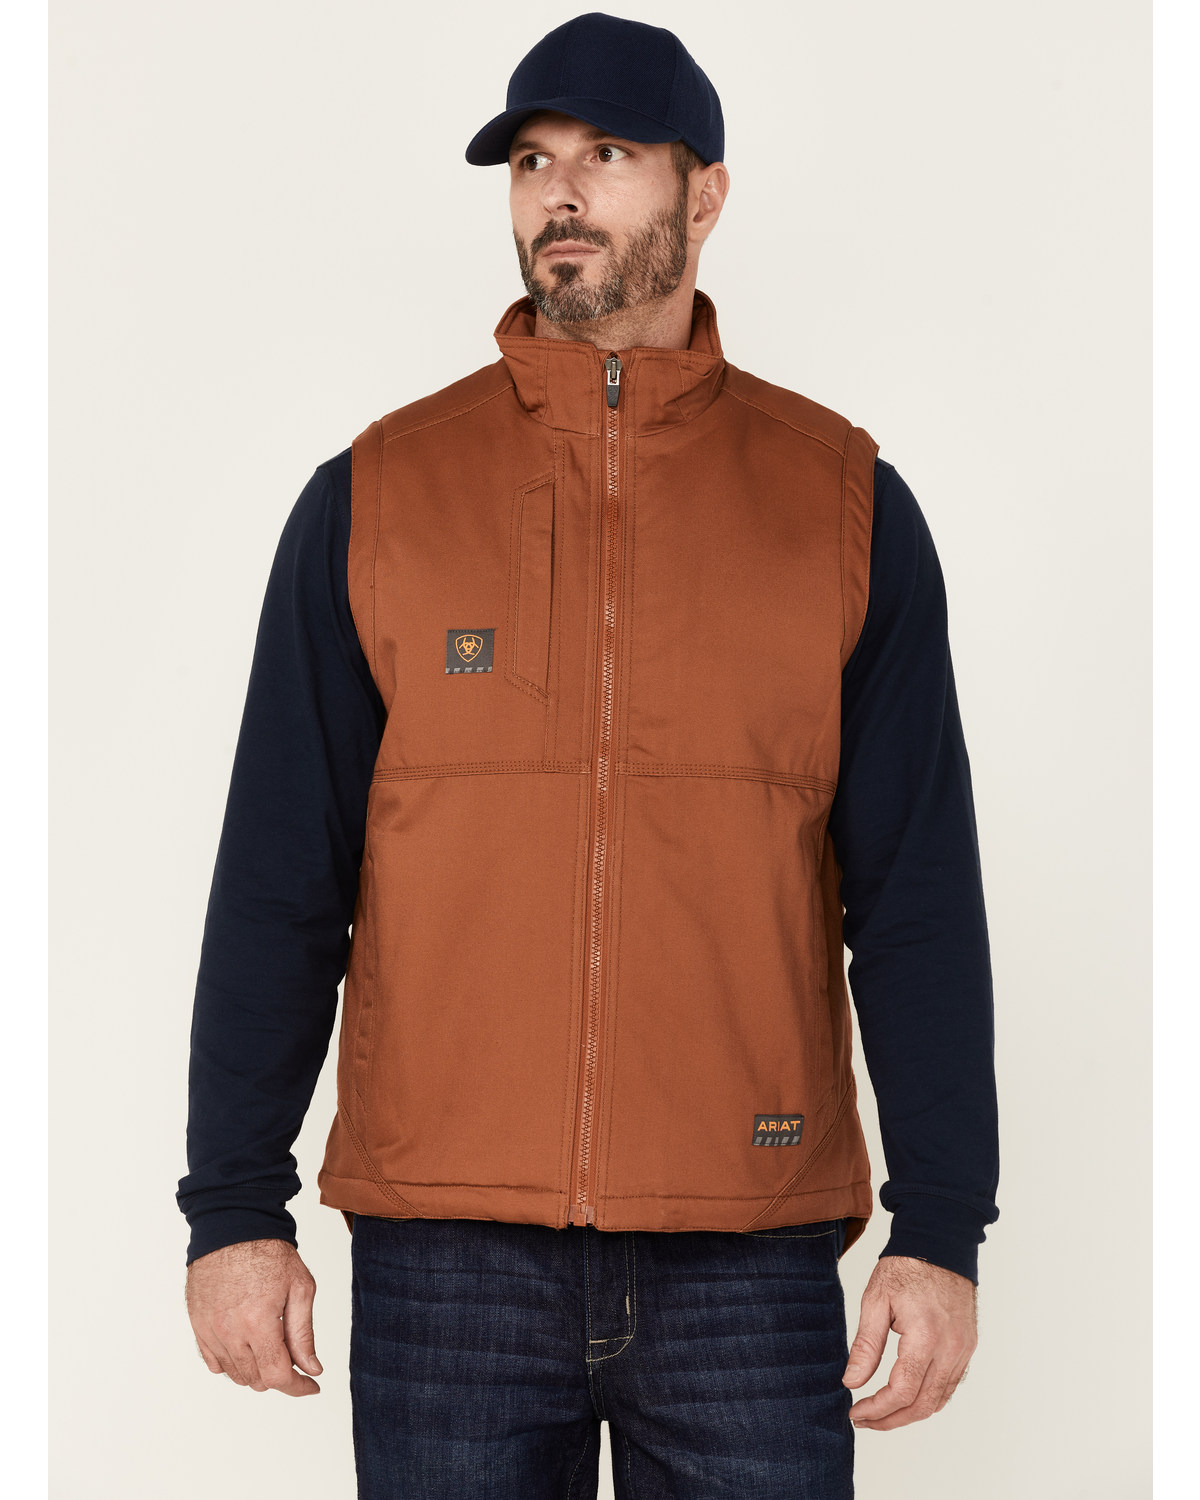 Ariat Men's Rebar Duracanvas Zip-Front Sherpa Work Vest